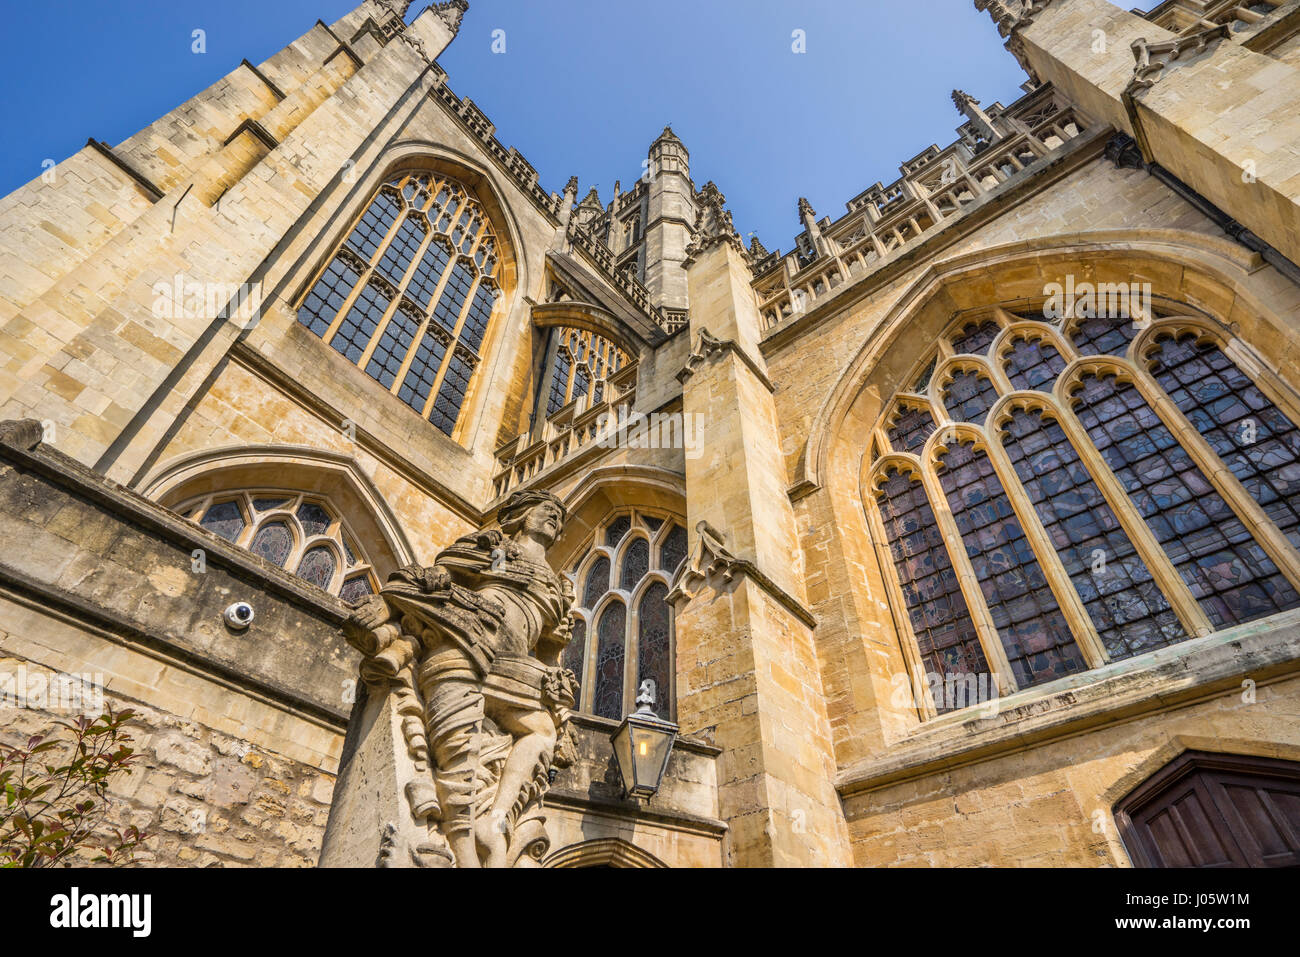 Vasca da bagno; Somerset; Sud Ovest Inghilterra; Regno Unito; Abbazia di Bath; Chiesa abbaziale di San Pietro e di San Paolo; gotico perpendicolare; l architettura Foto Stock